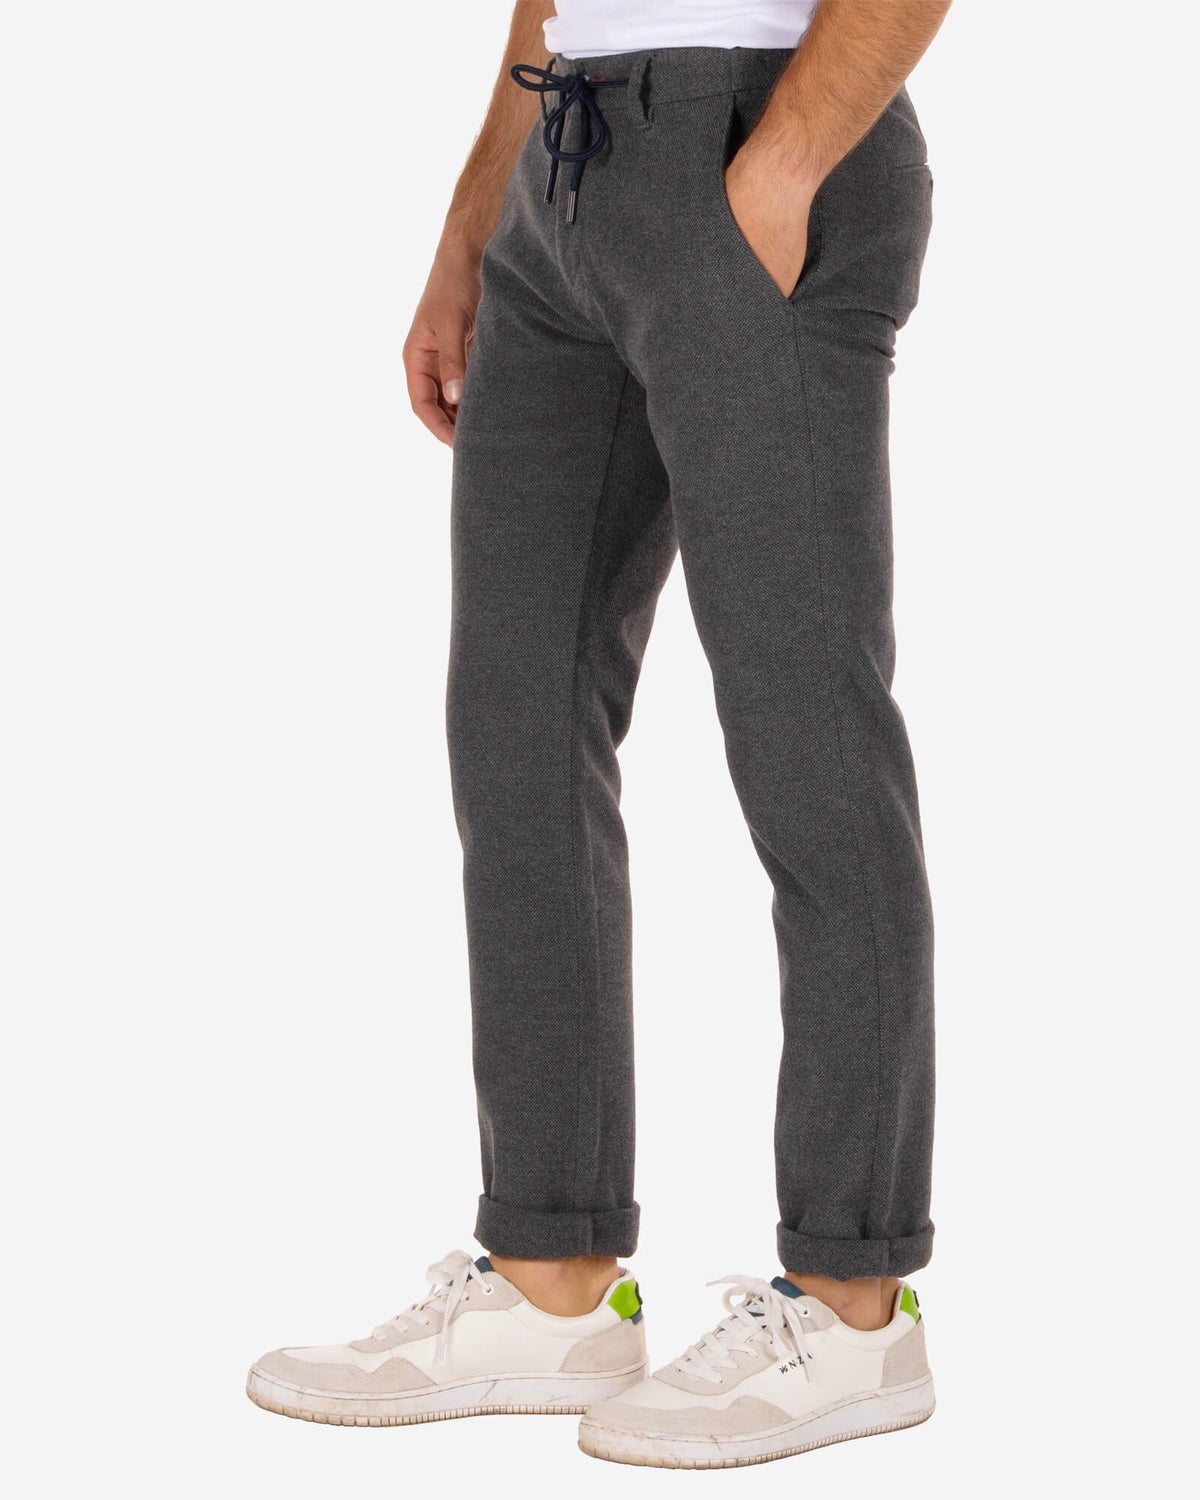 Les pantalons de survêtement Napier Relaxed Plain - Concrete Grey